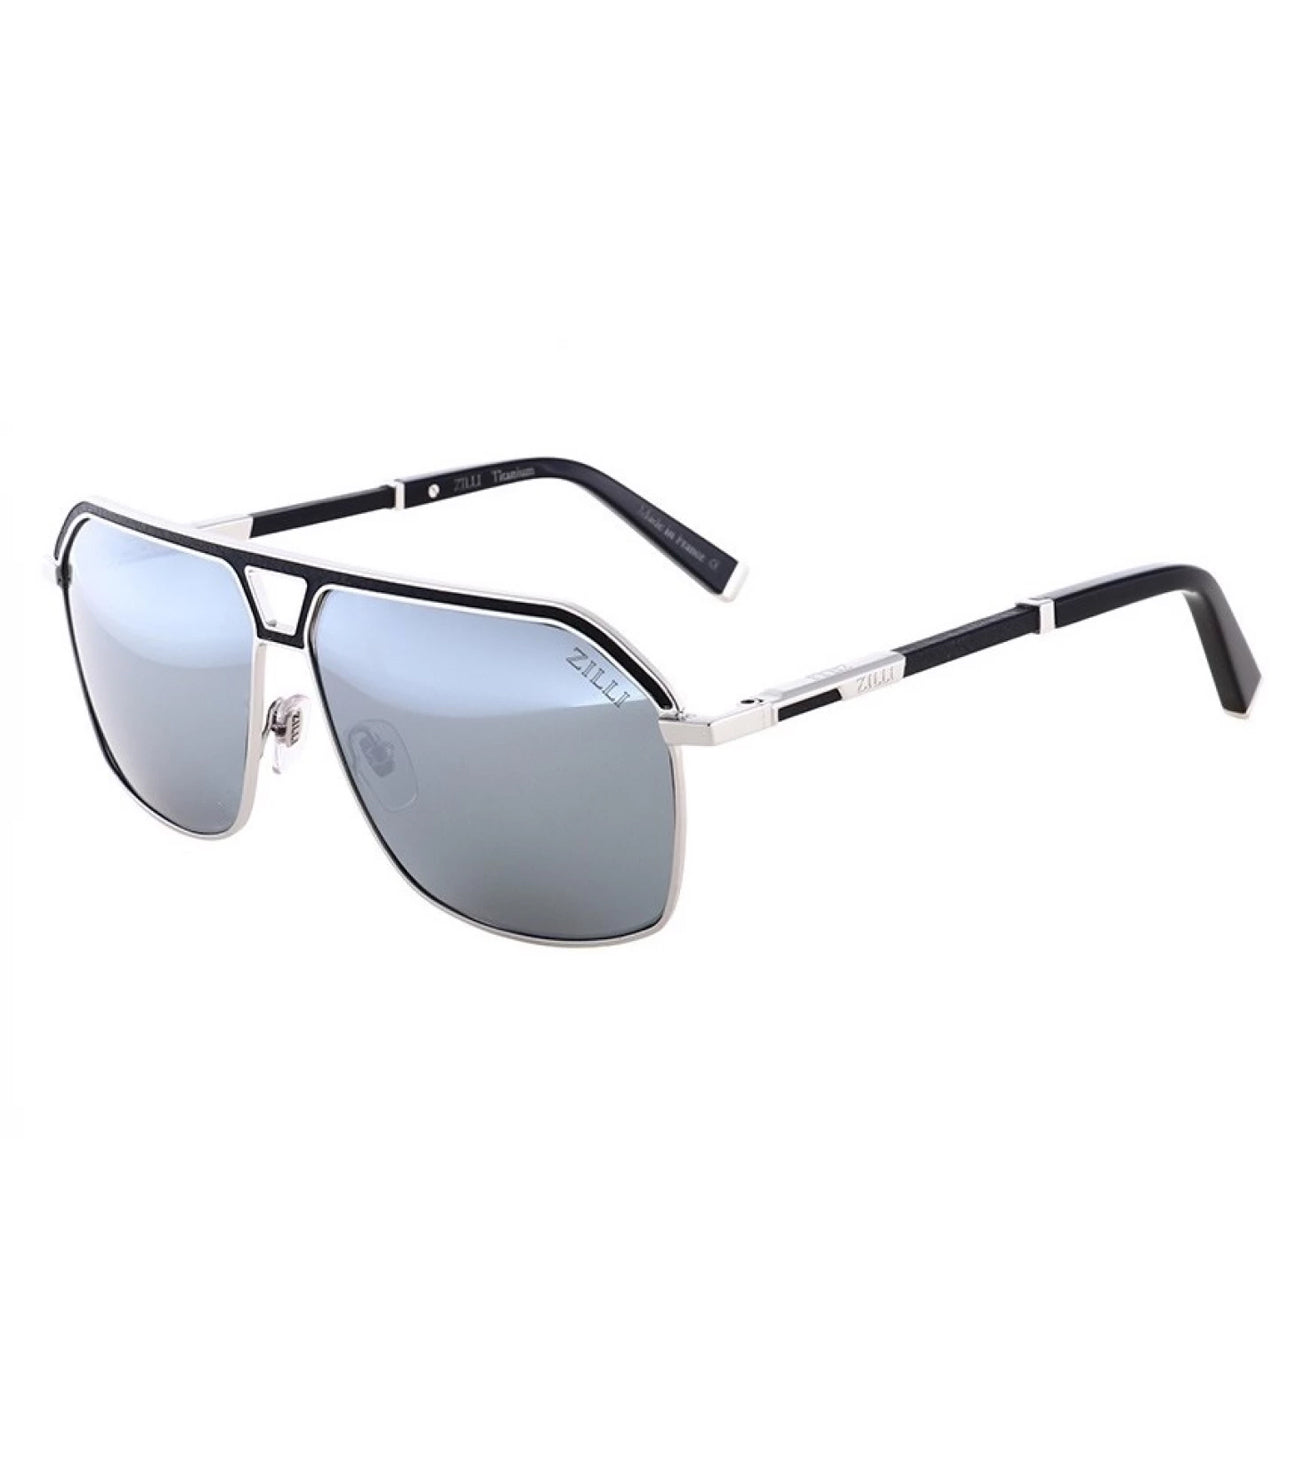 Zilli Men's Grey-Mirrored Aviator Sunglasses